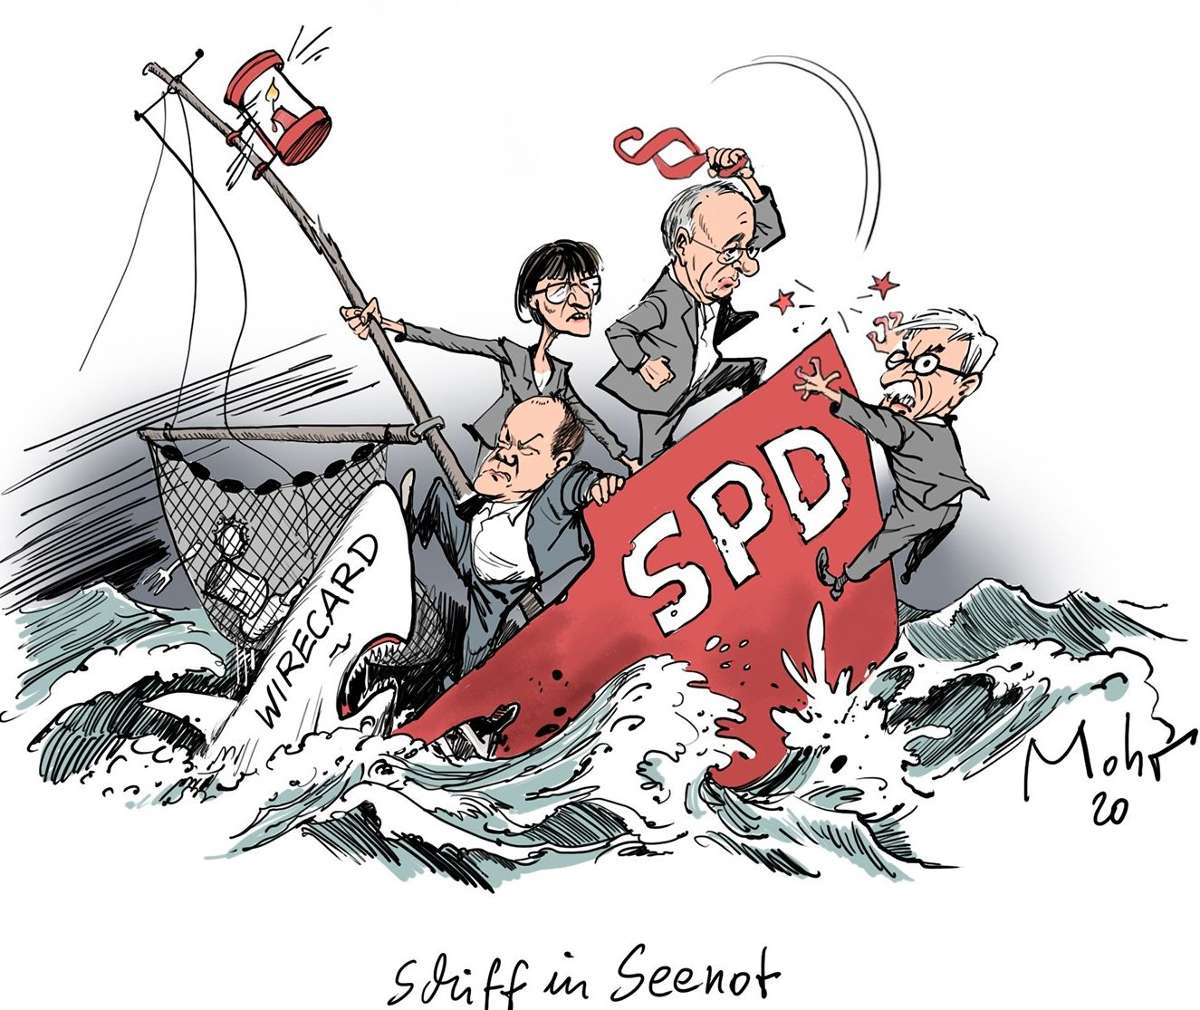 13. September 2020 (Mohr): "Schiff in Seenot"